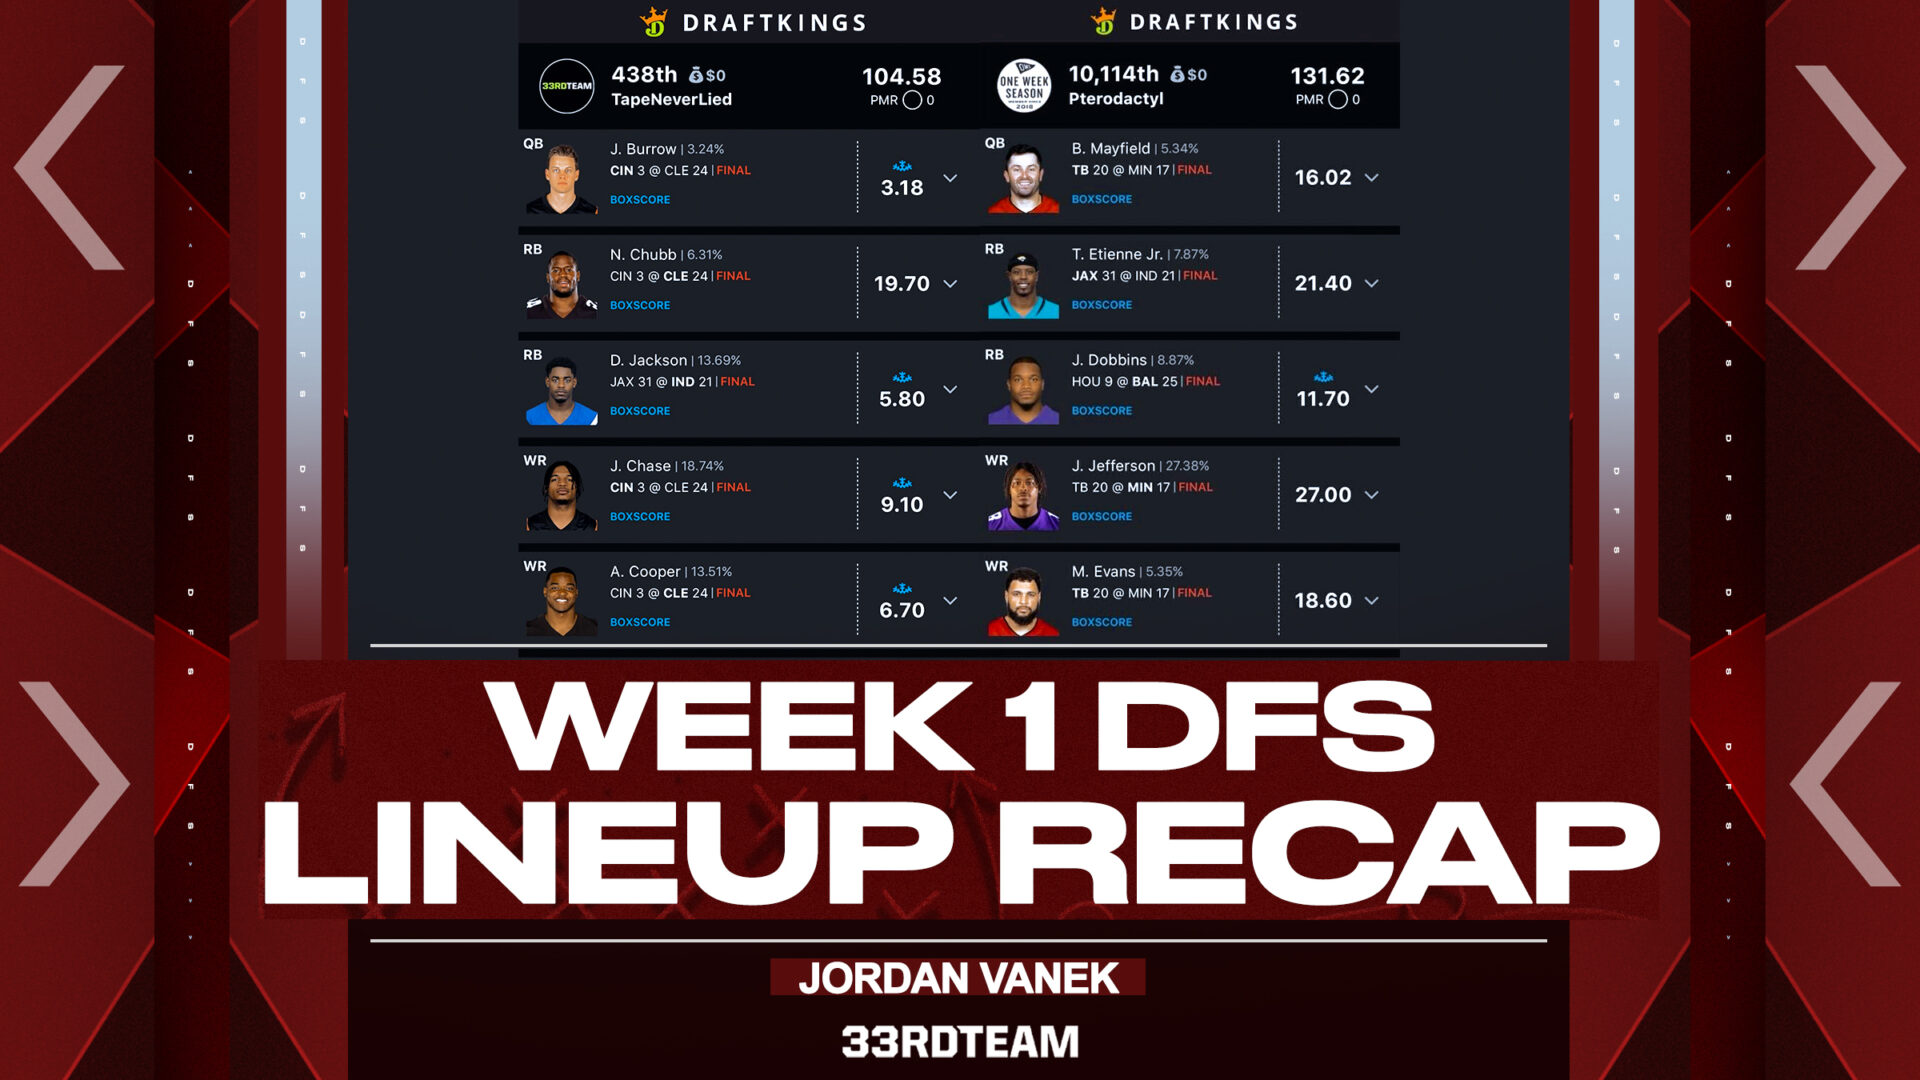 dfs week 1 rankings